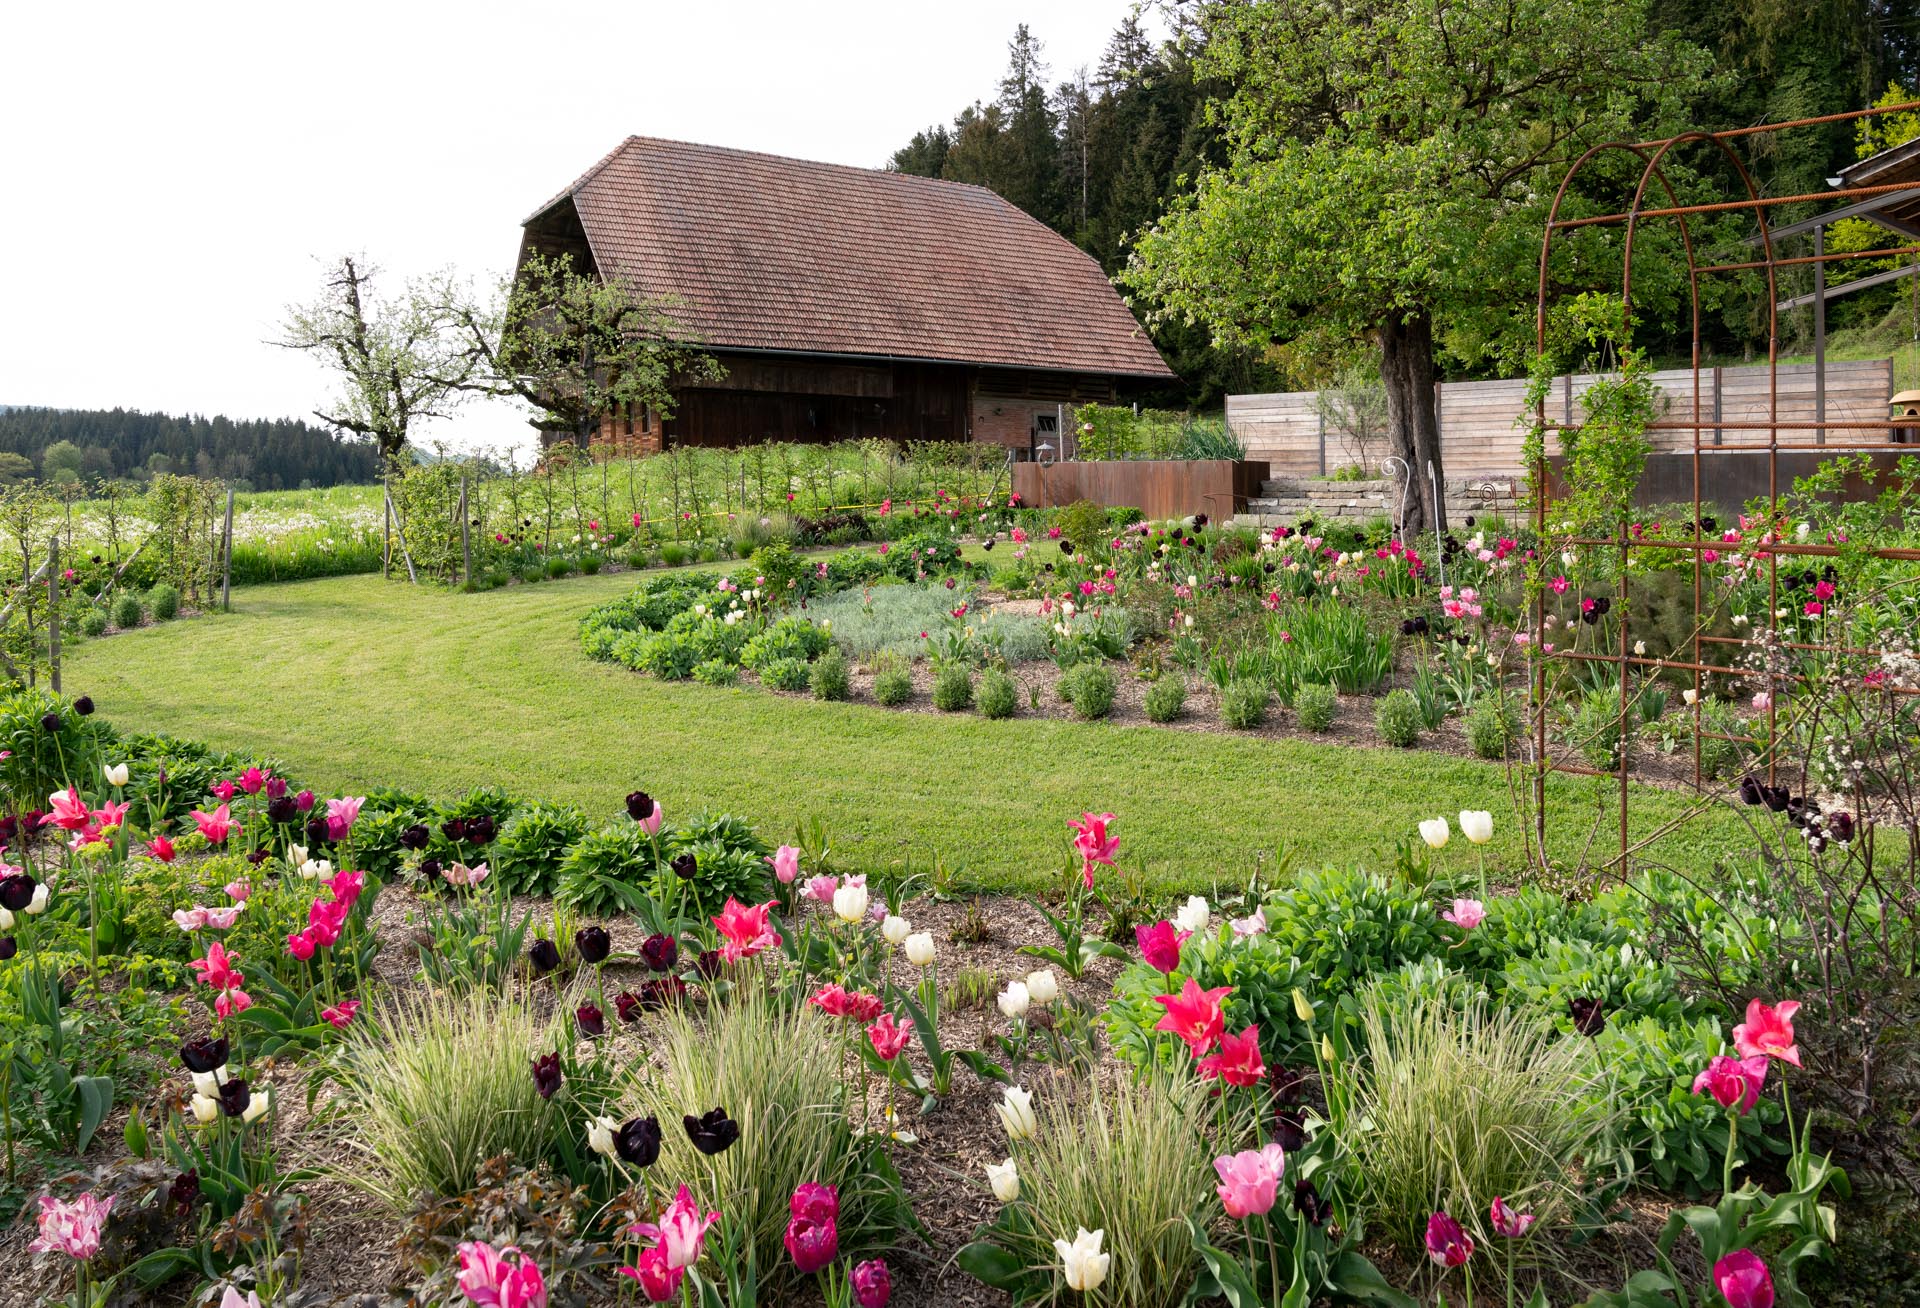 Blumengarten: Ein bunt blühender Garten eines Bauernhofs mit verschiedenen Blumenarten in voller Pracht.